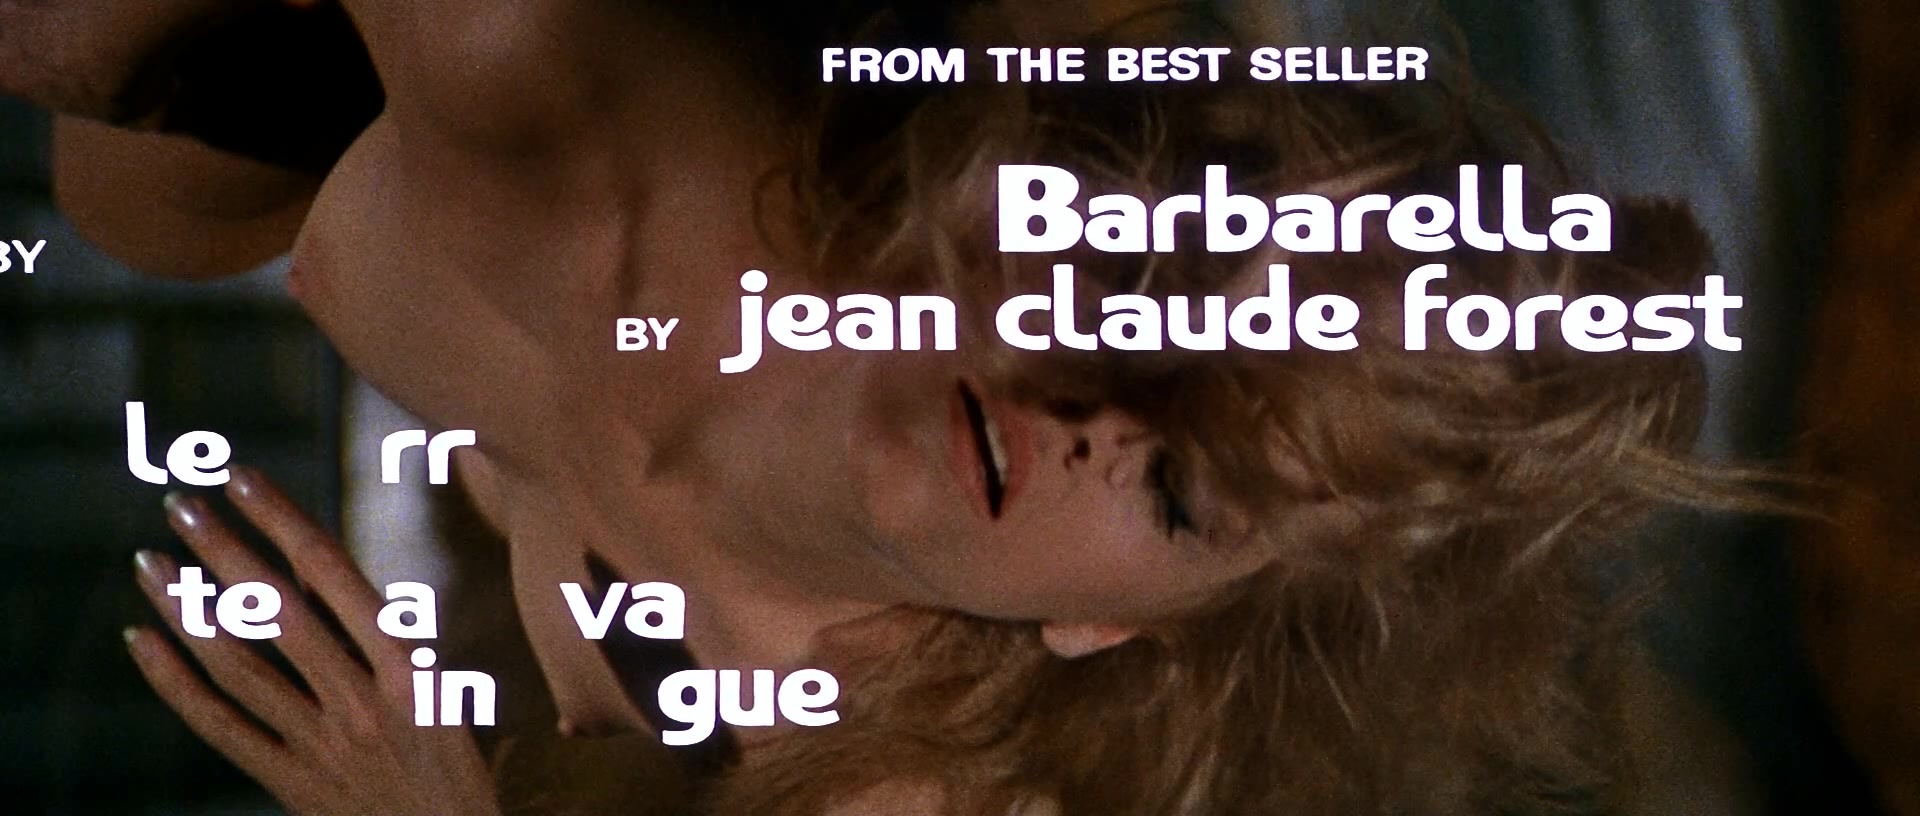 Nude barbarella Jane Fonda